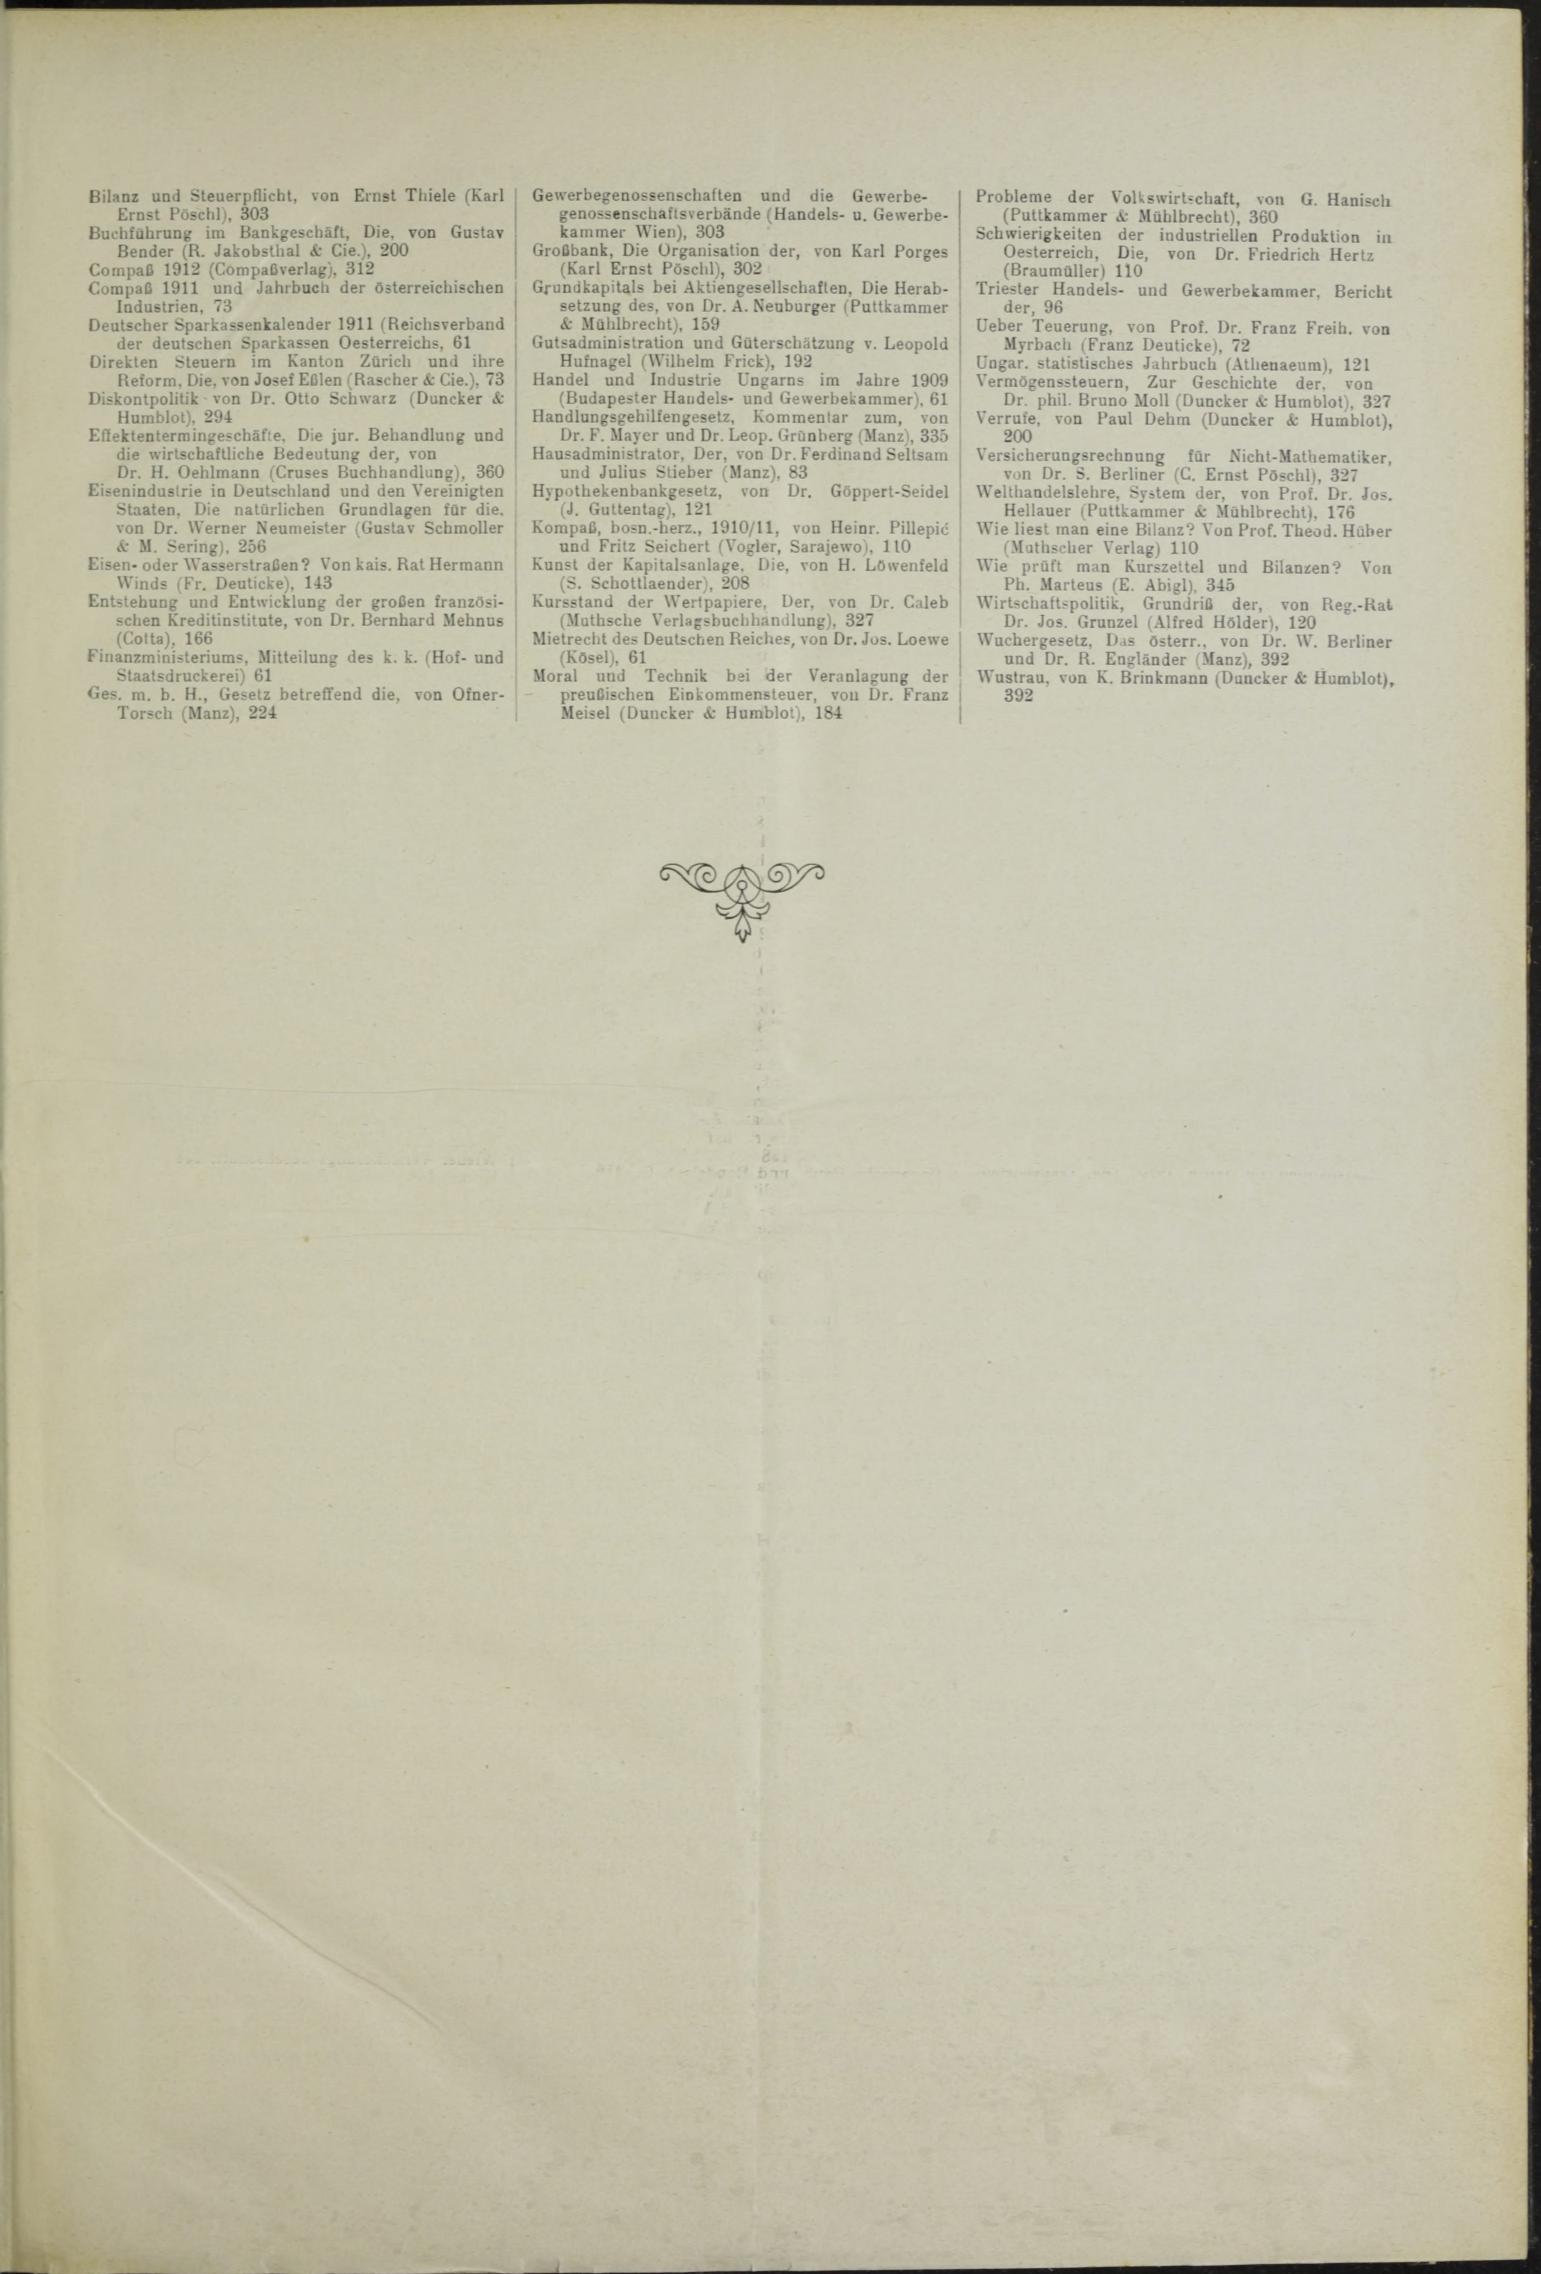 Der Tresor 24.06.1911 - Seite 11